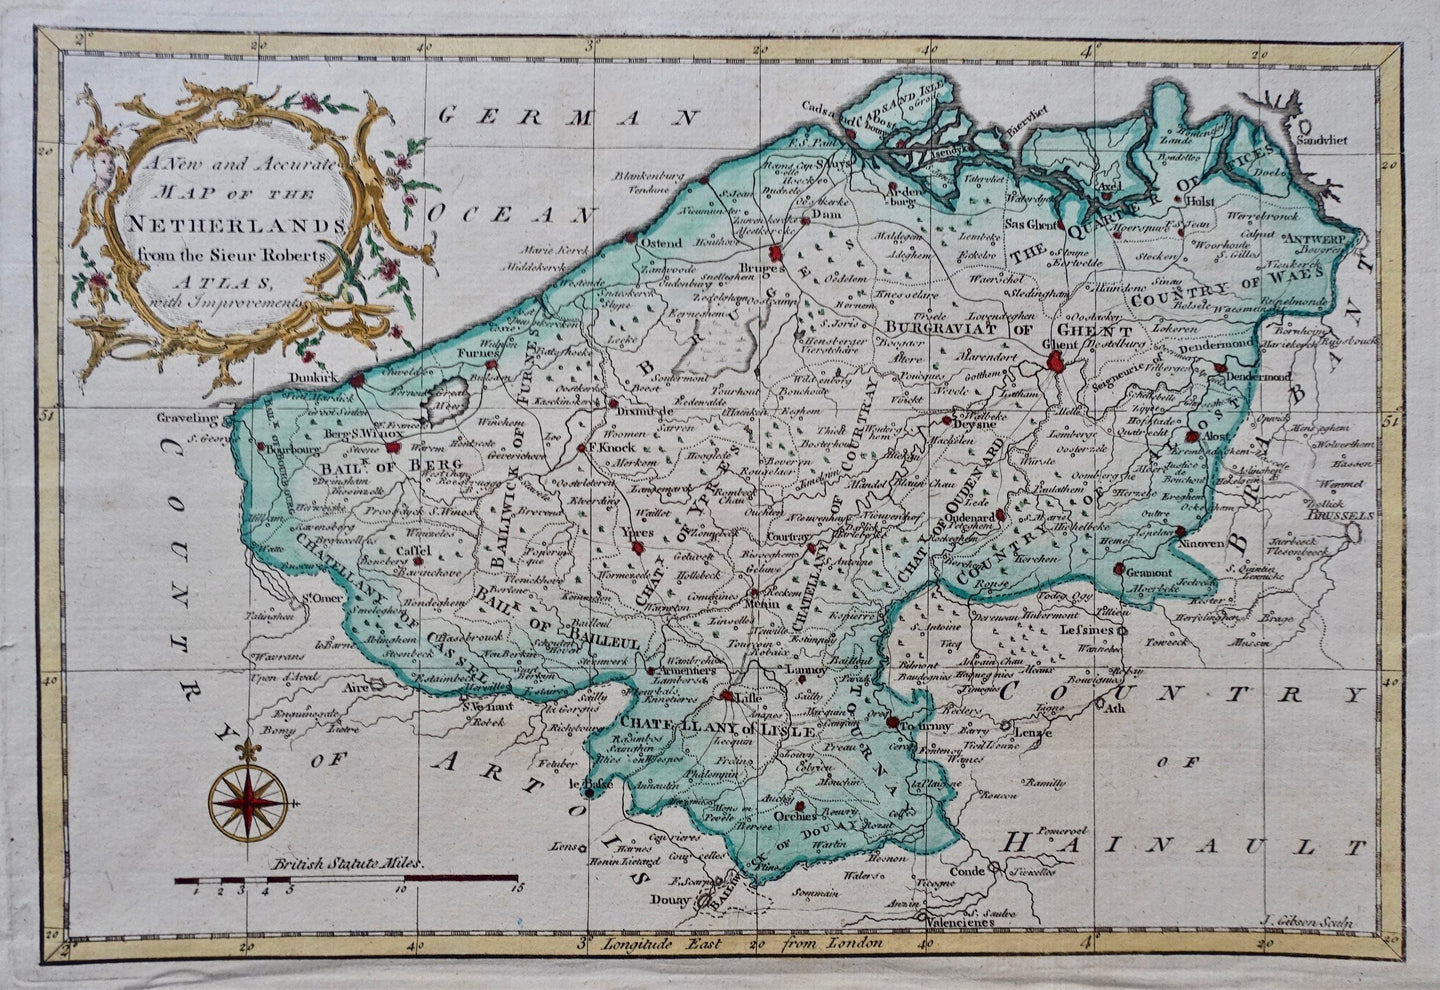 België Vlaanderen Belgium Flanders - Gibson / Roberts - 1773